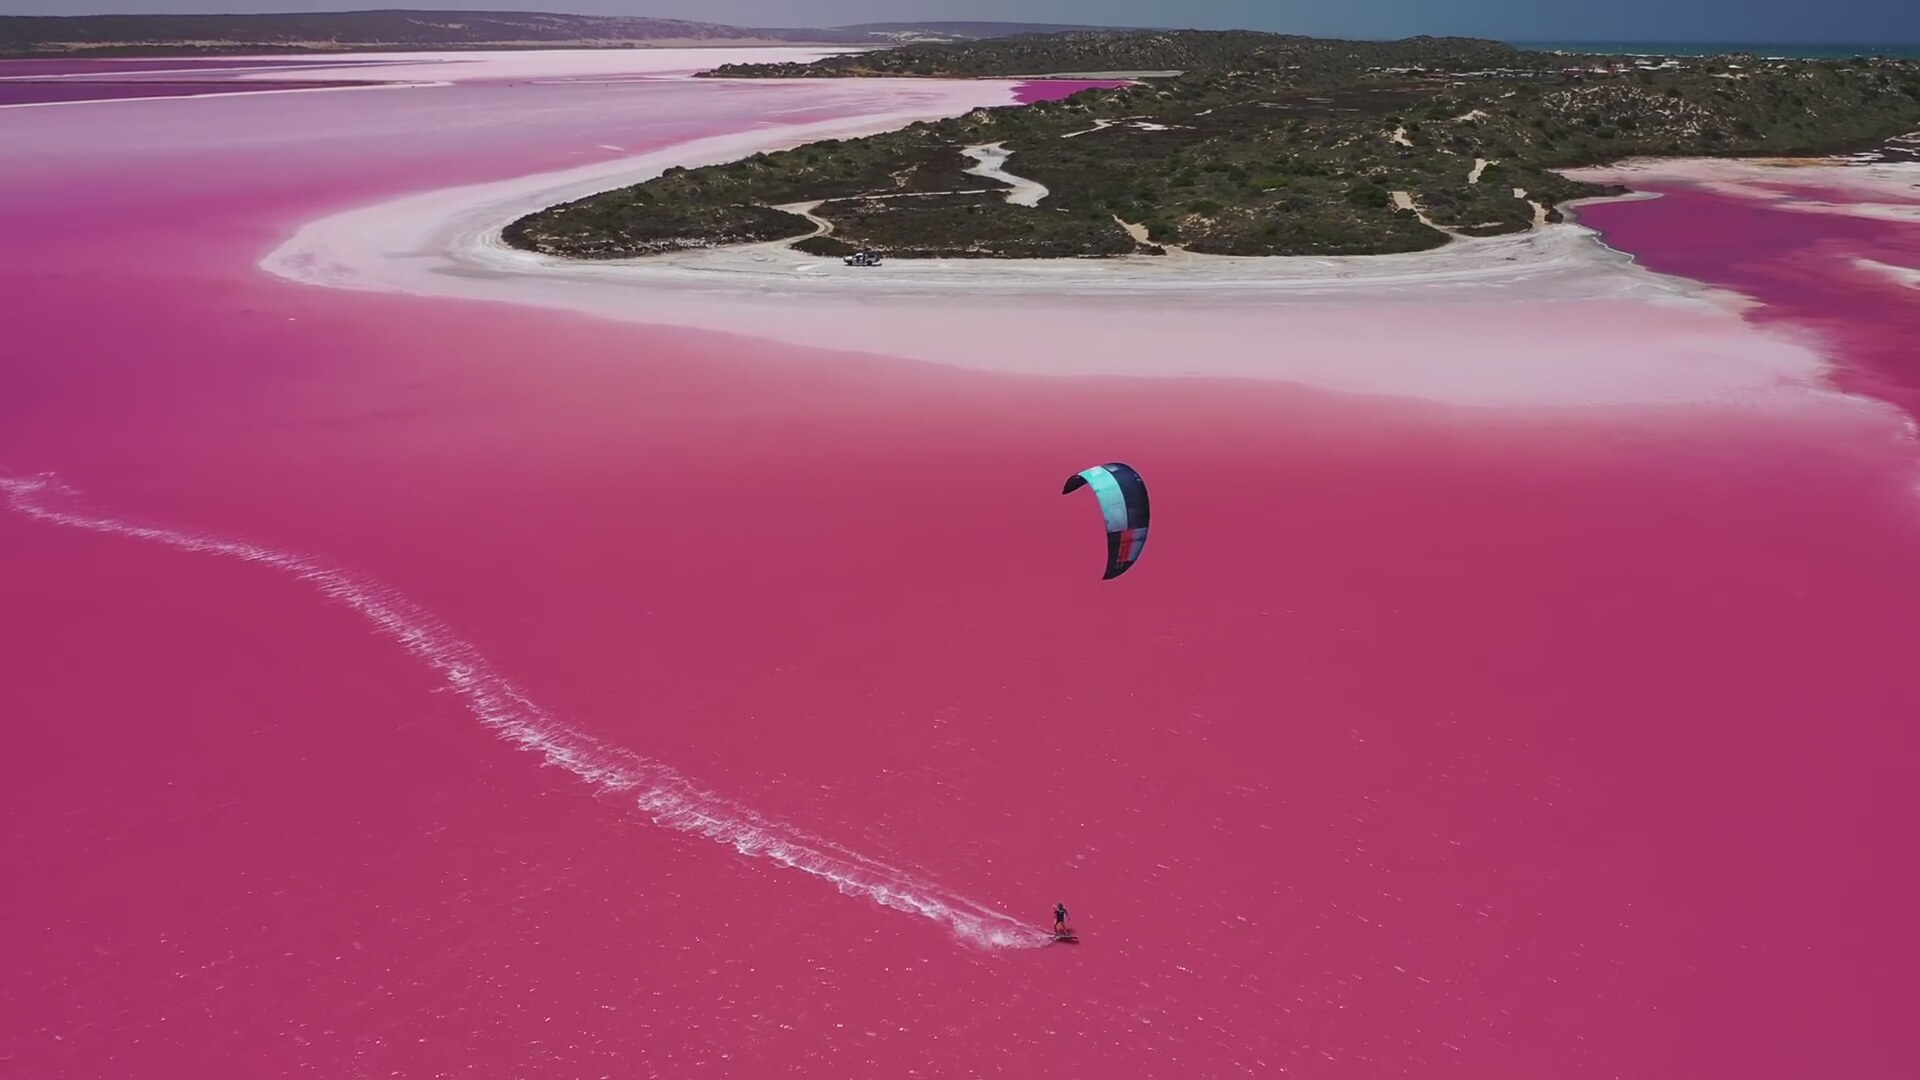 Озеро хиллер австралия. Озеро Лагуна Хатт Австралия. Озеро Хиллер (остров Миддл). Розовое озеро Хиллер Австралия. Озеро Хиллер (hillier), Западная Австралия.